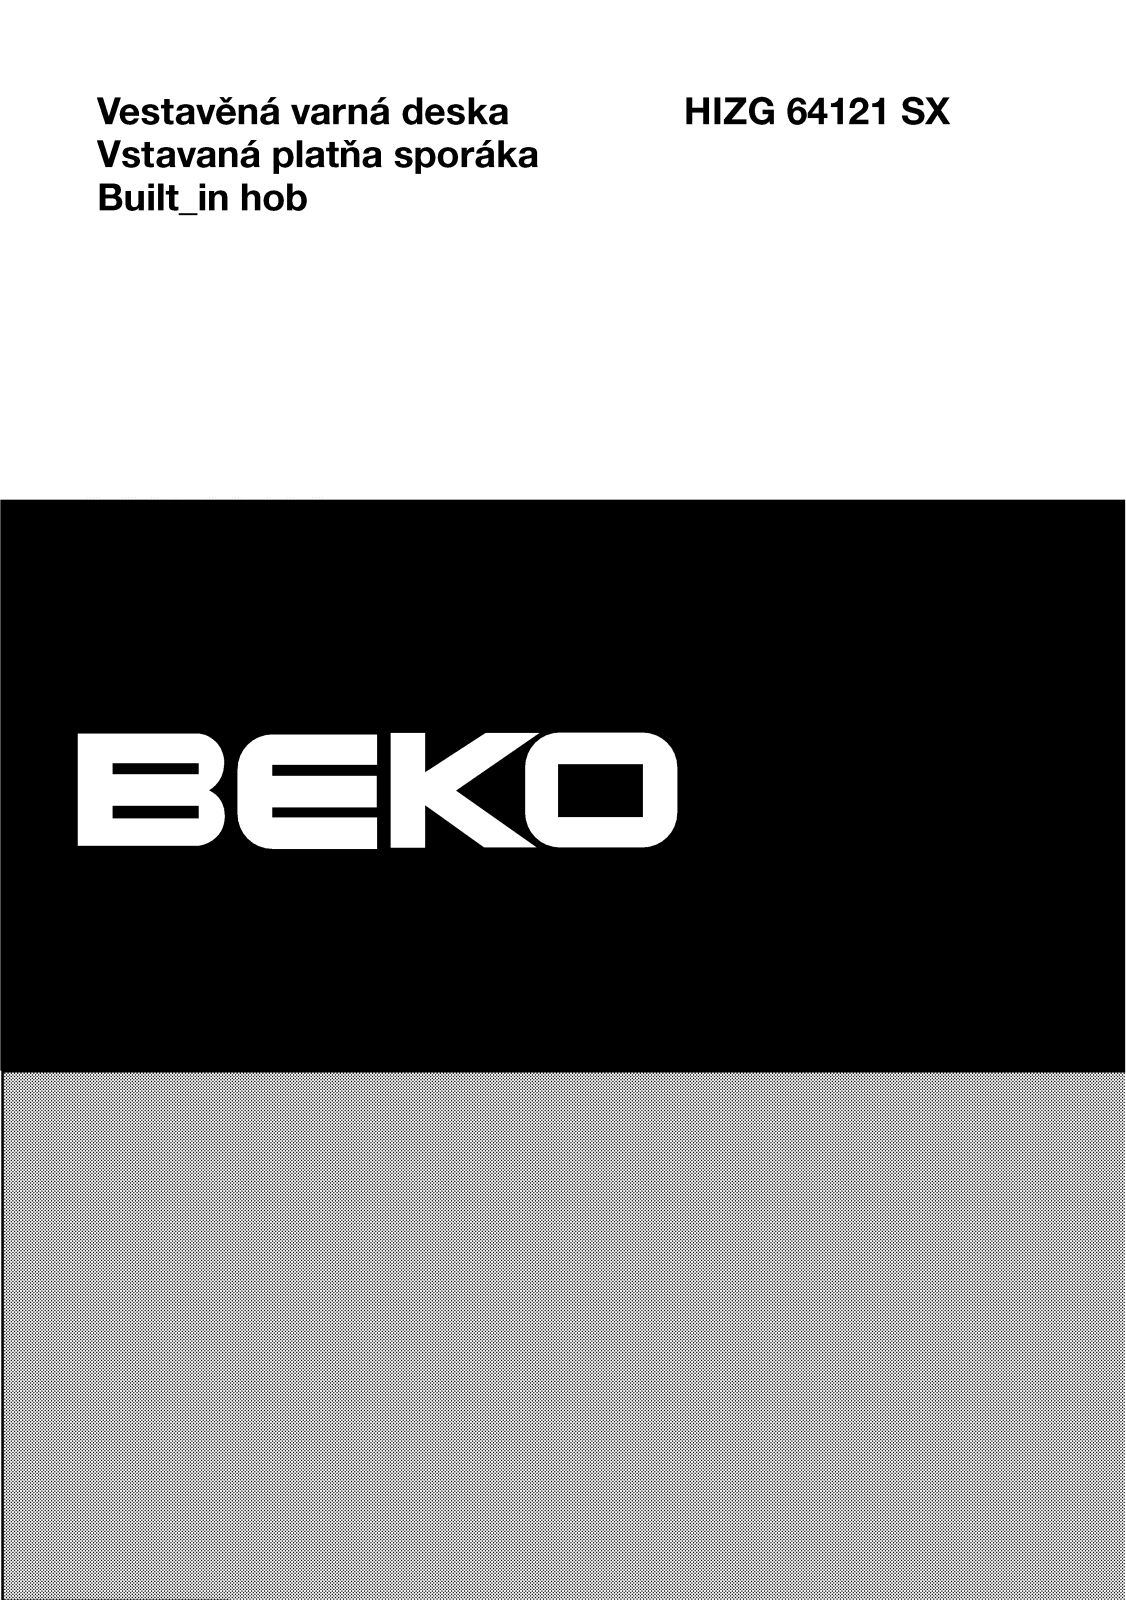 Beko HIZG 64121 SX User Manual